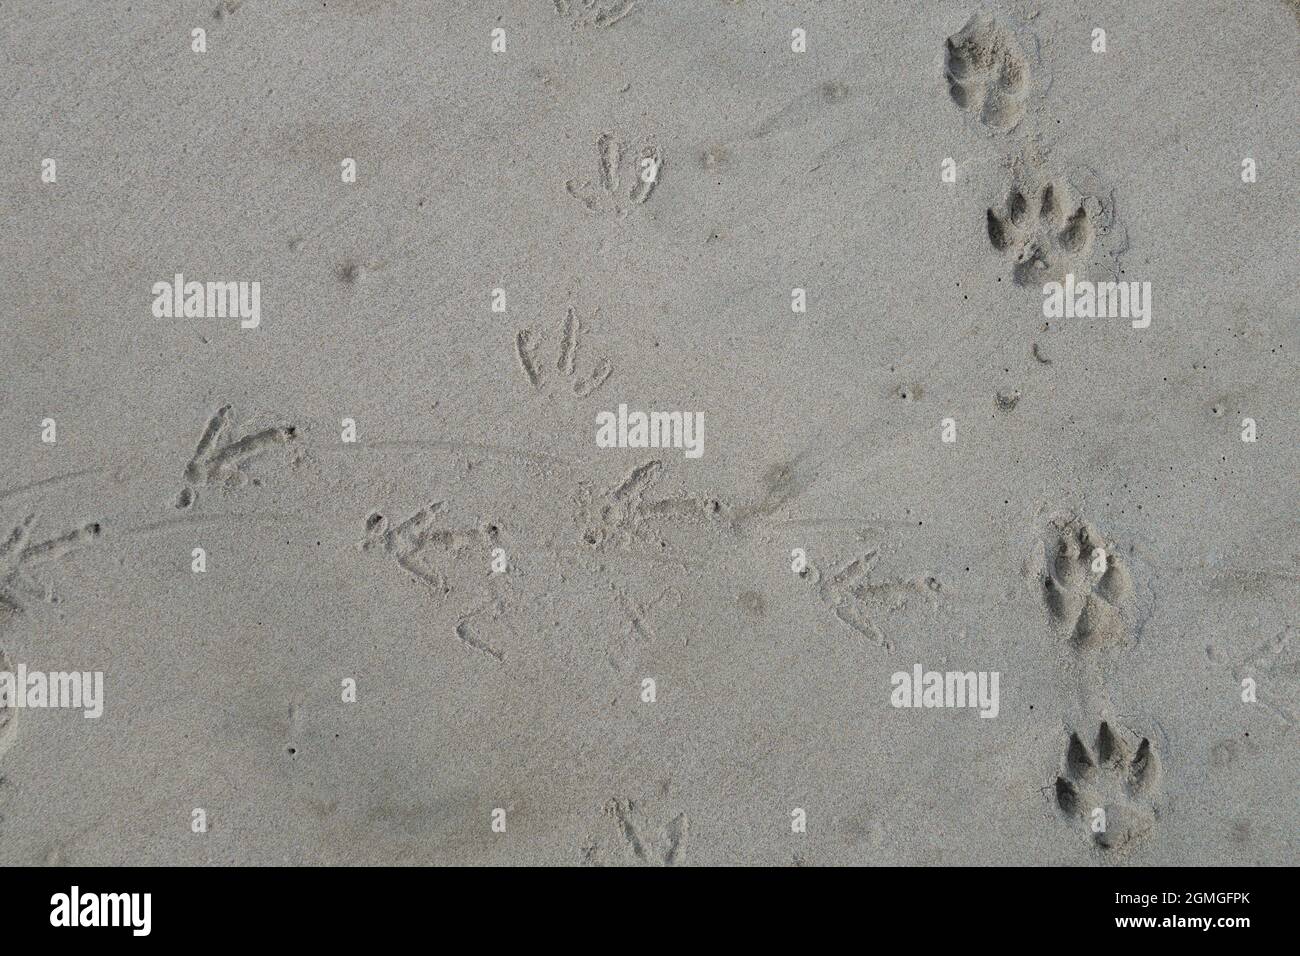 Les pattes de chien sont imprimées sur une plage de sable. Banque D'Images